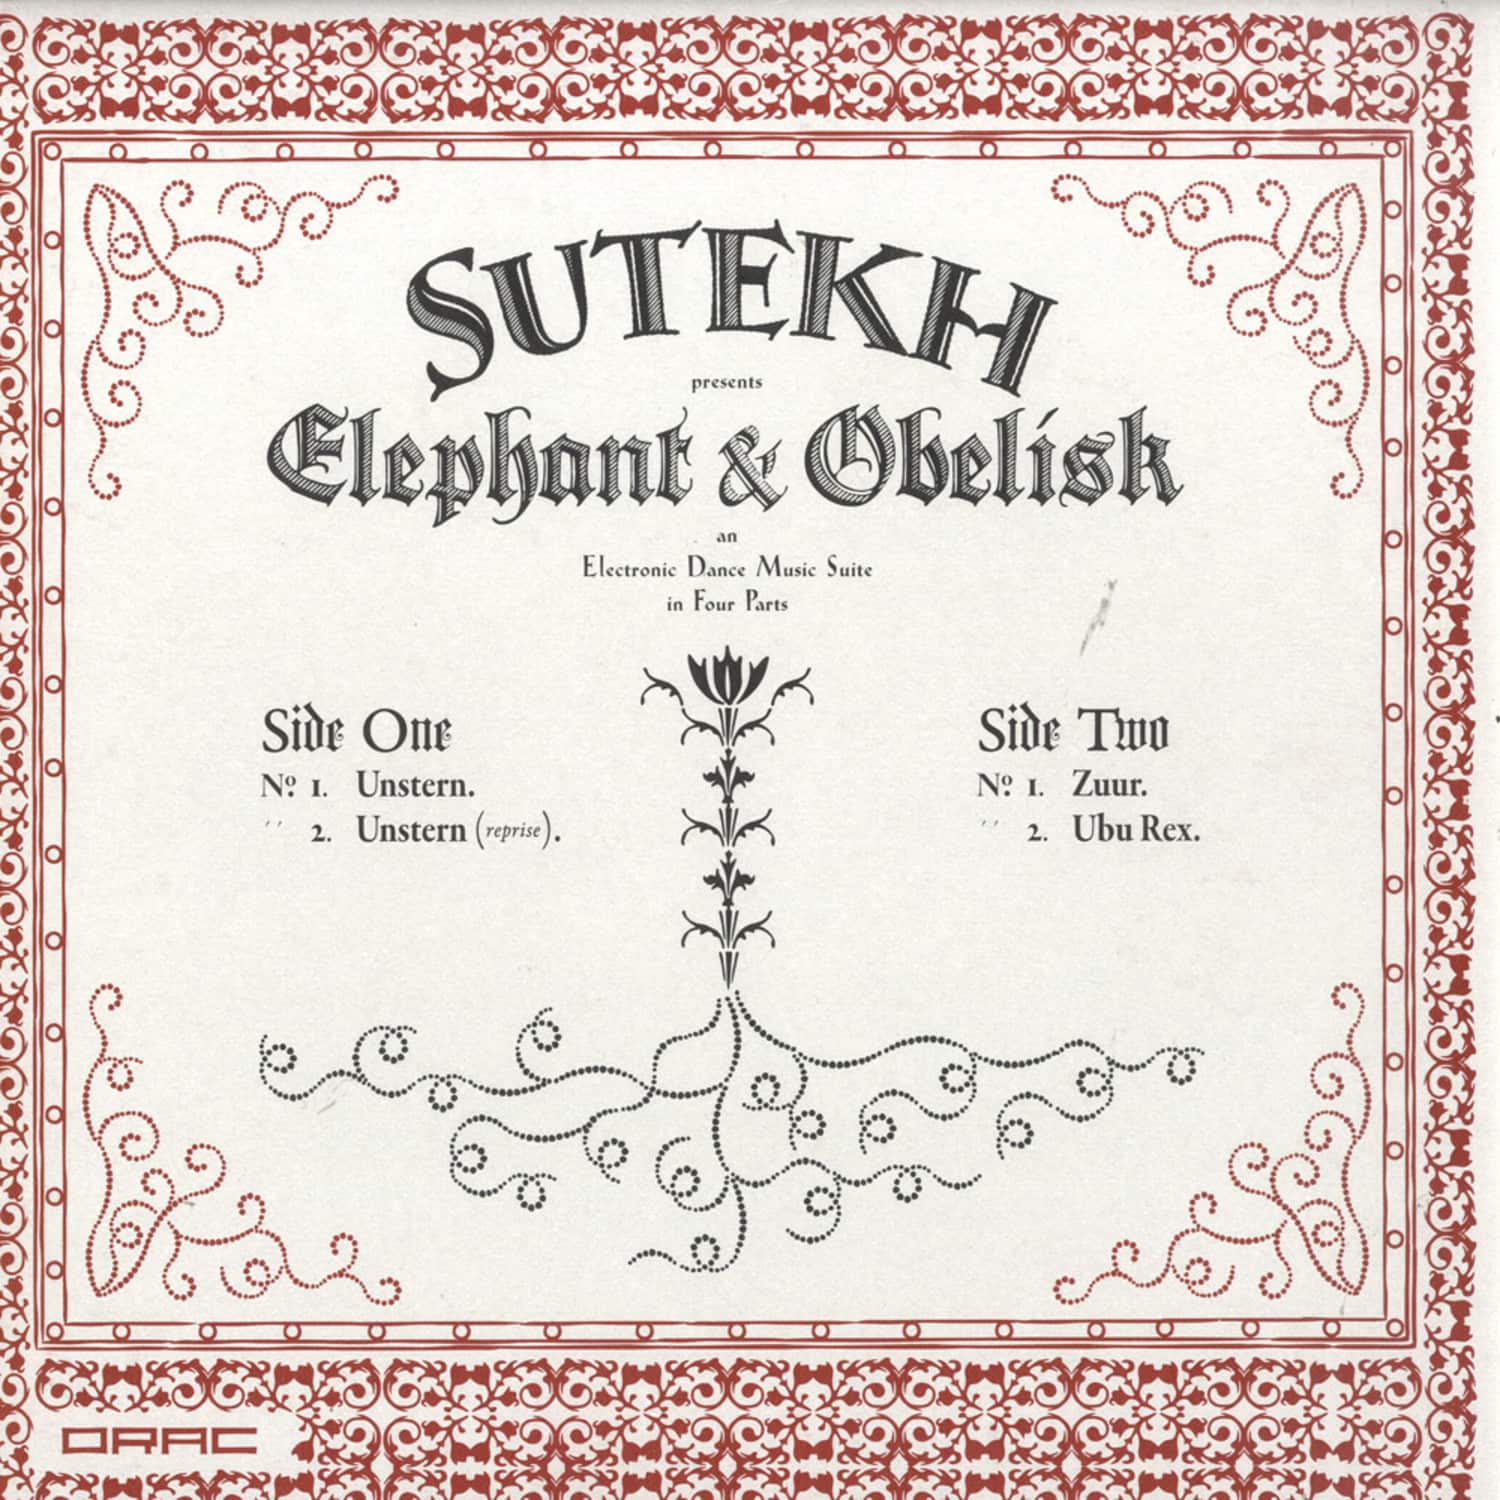 Sutekh - ELEPHANT AND OBELISK